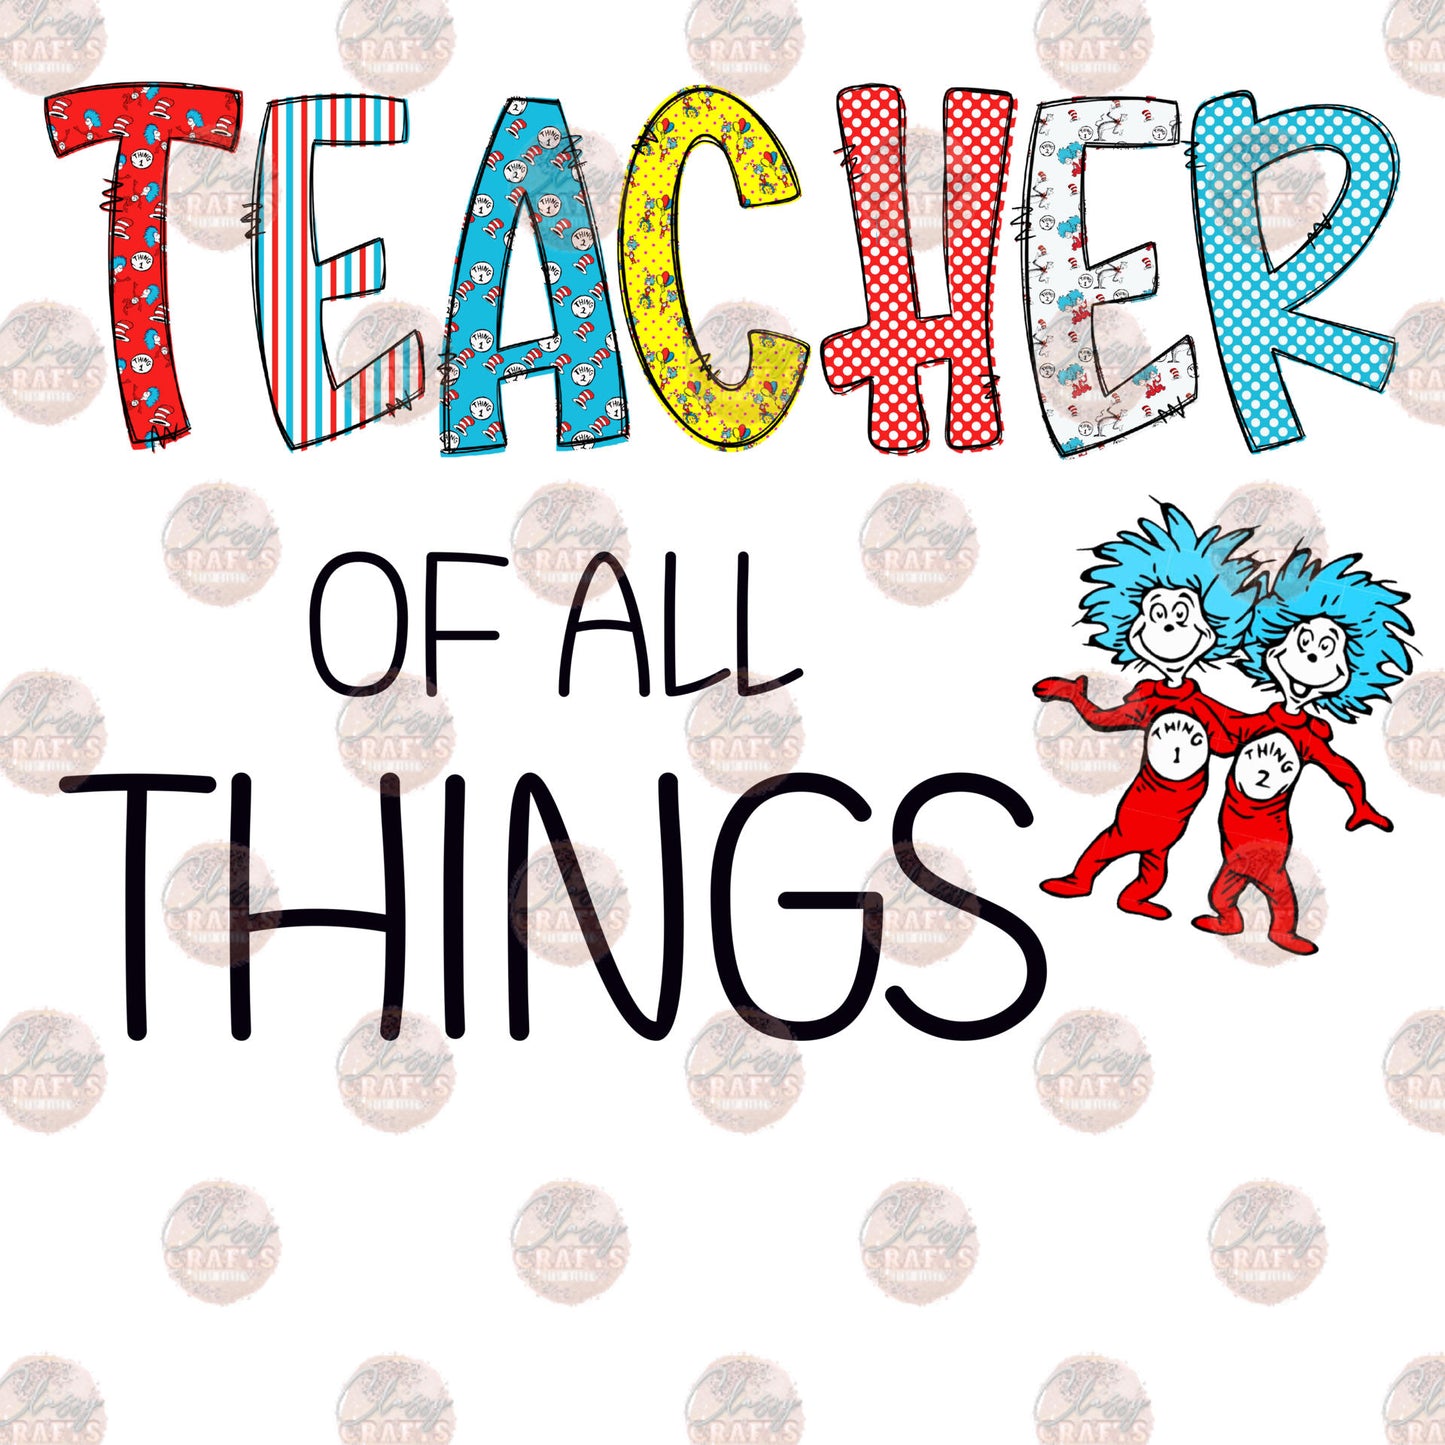 Teacher Of All Things Transfer